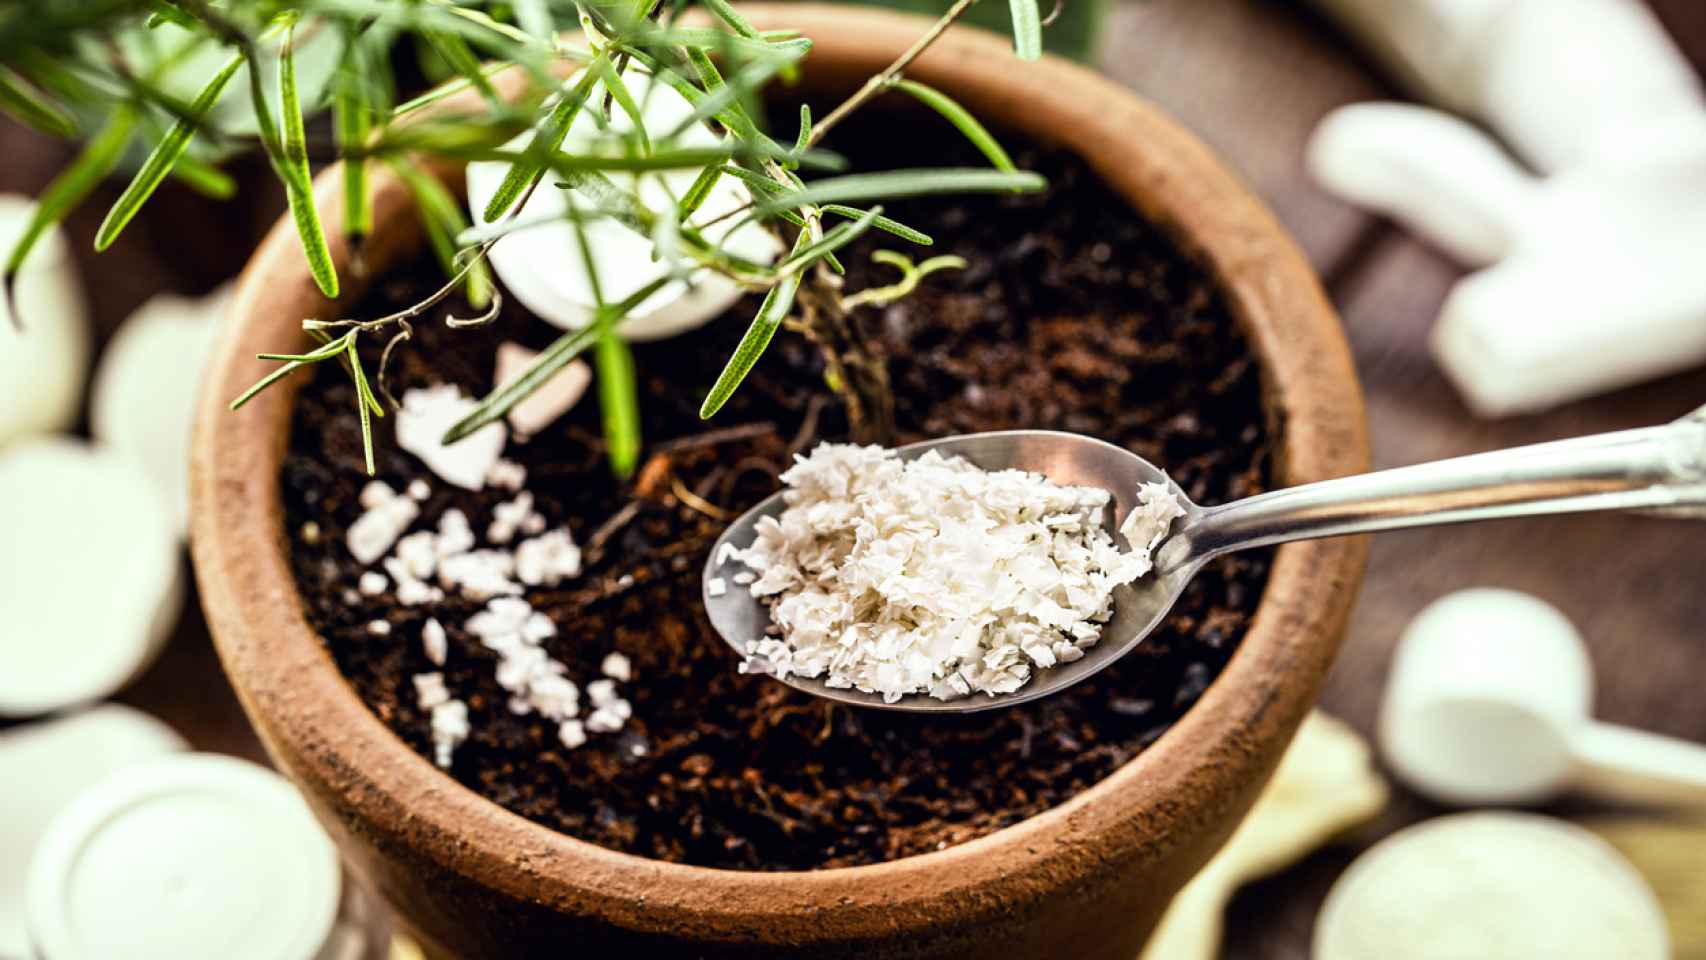 Cómo hacer fertilizante casero para plantas: desde cáscaras de huevo y plátano a cenizas de madera